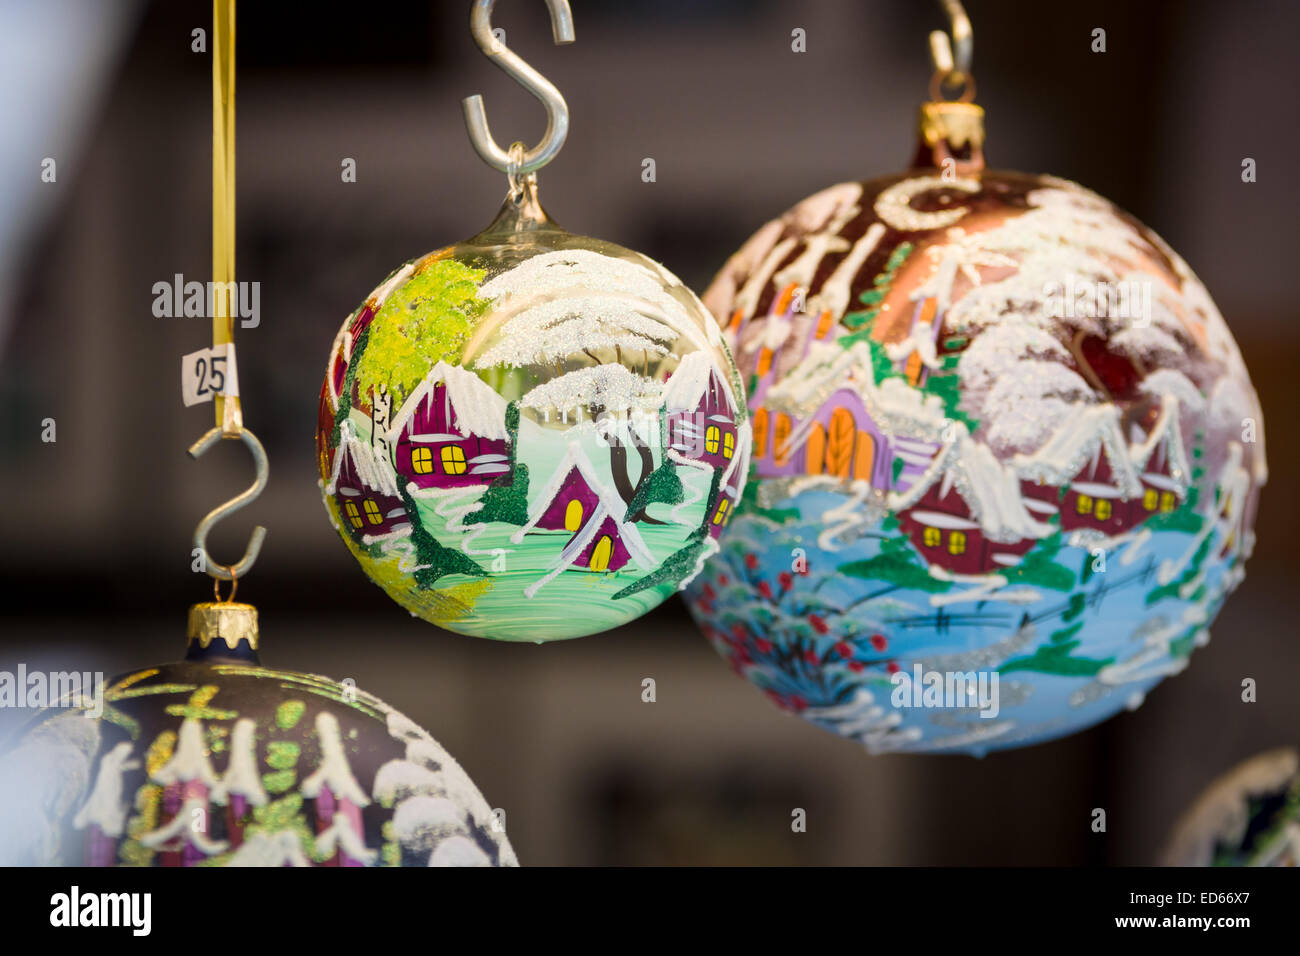 Praga souvenir artigianale di decorazioni di Natale. Praga è la capitale e la città più grande della Repubblica ceca. Foto Stock